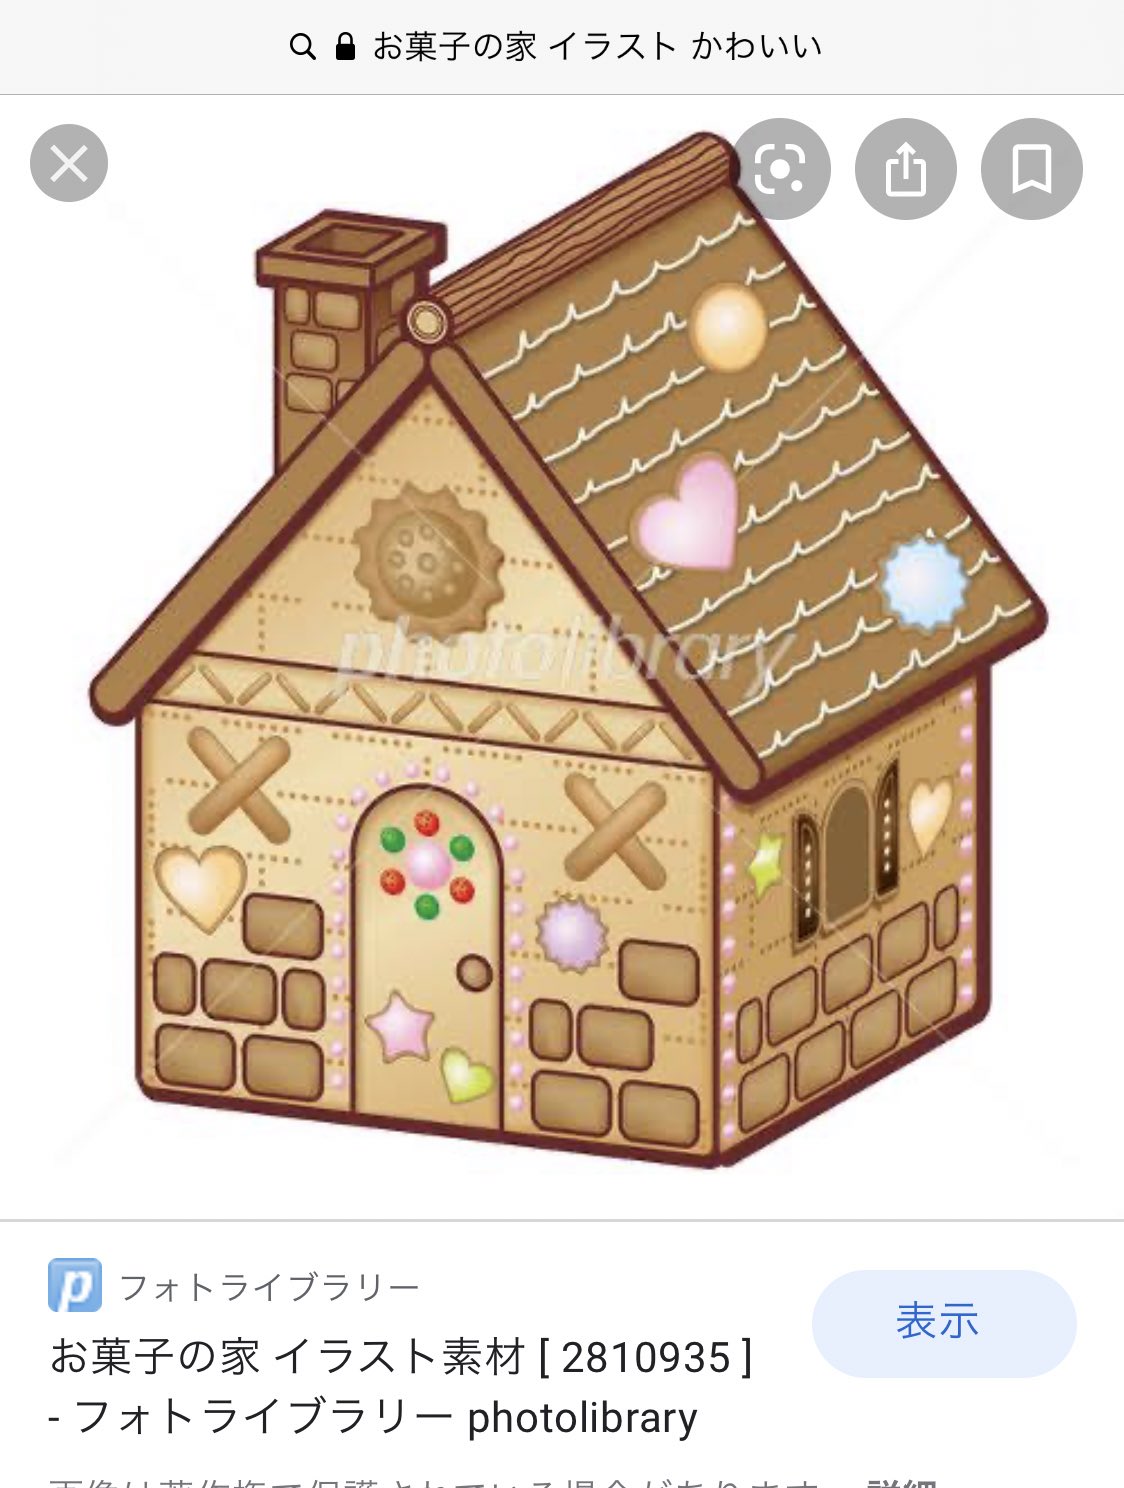 Twitter 上的 しめろでぃ お菓子の家も お菓子の家 イラスト かわいい で検索してからアレンジ加えてるのまじで可愛いな T Co Xpbobgem1p Twitter